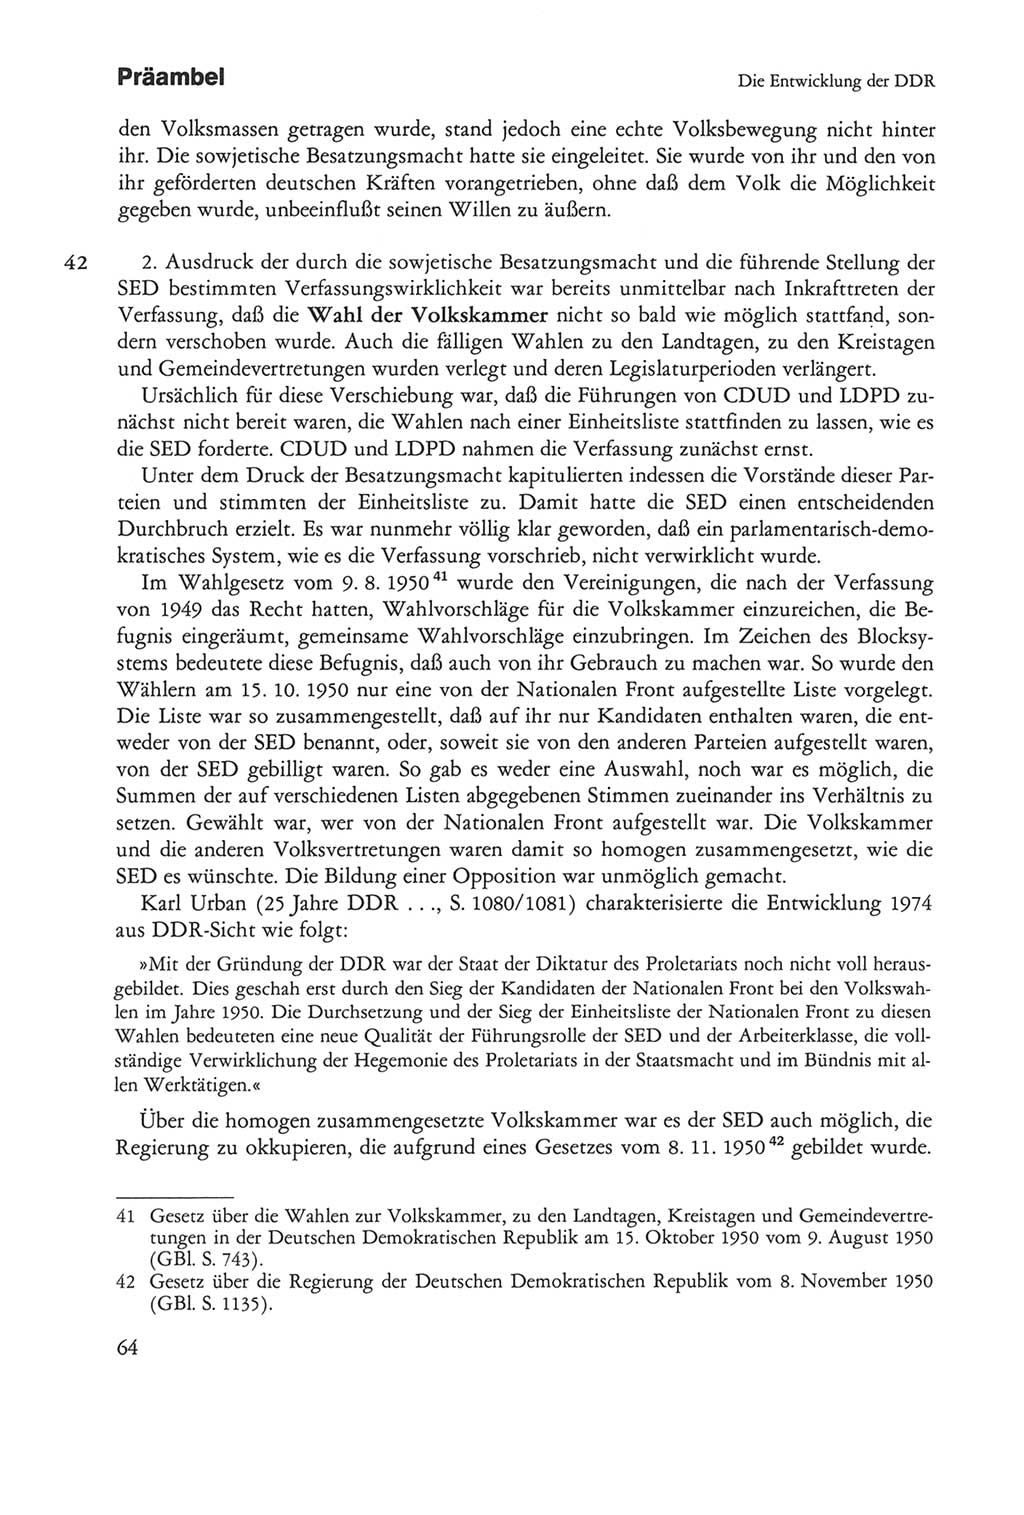 Die sozialistische Verfassung der Deutschen Demokratischen Republik (DDR), Kommentar mit einem Nachtrag 1997, Seite 64 (Soz. Verf. DDR Komm. Nachtr. 1997, S. 64)